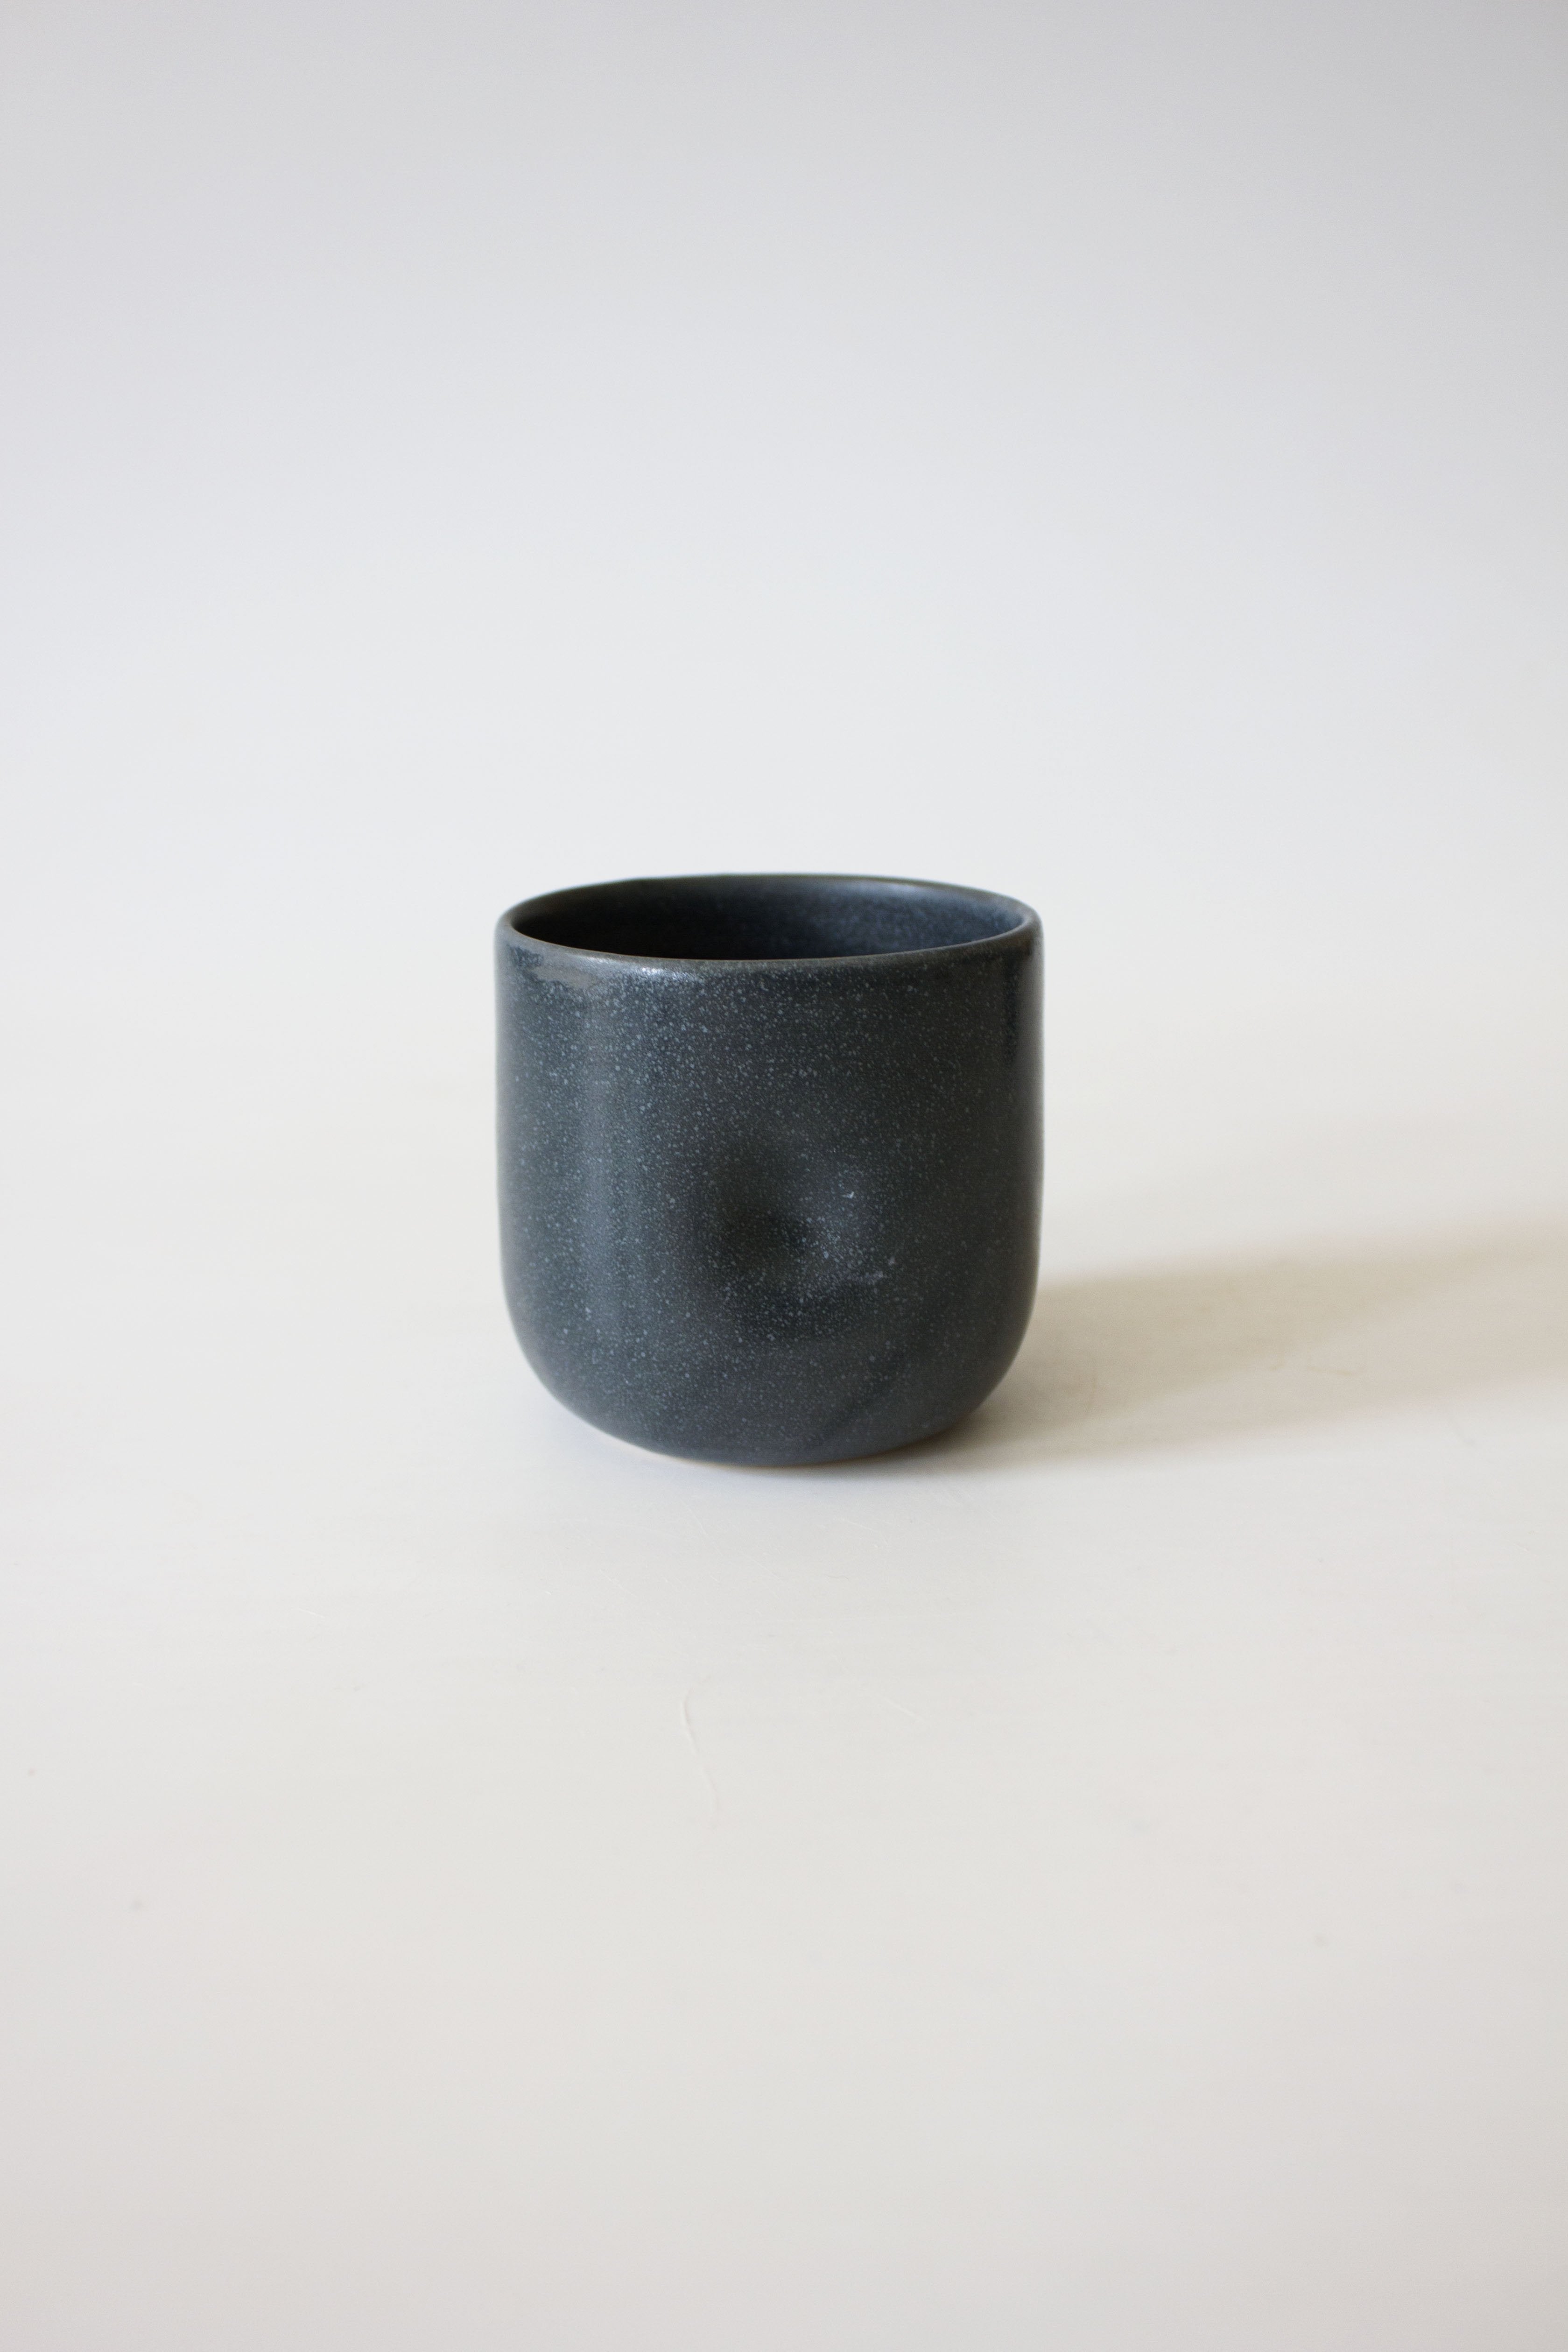 Dimple Cup | Basalt Black | Handmade Ceramic | by Bowbeer Designs - Lifestory